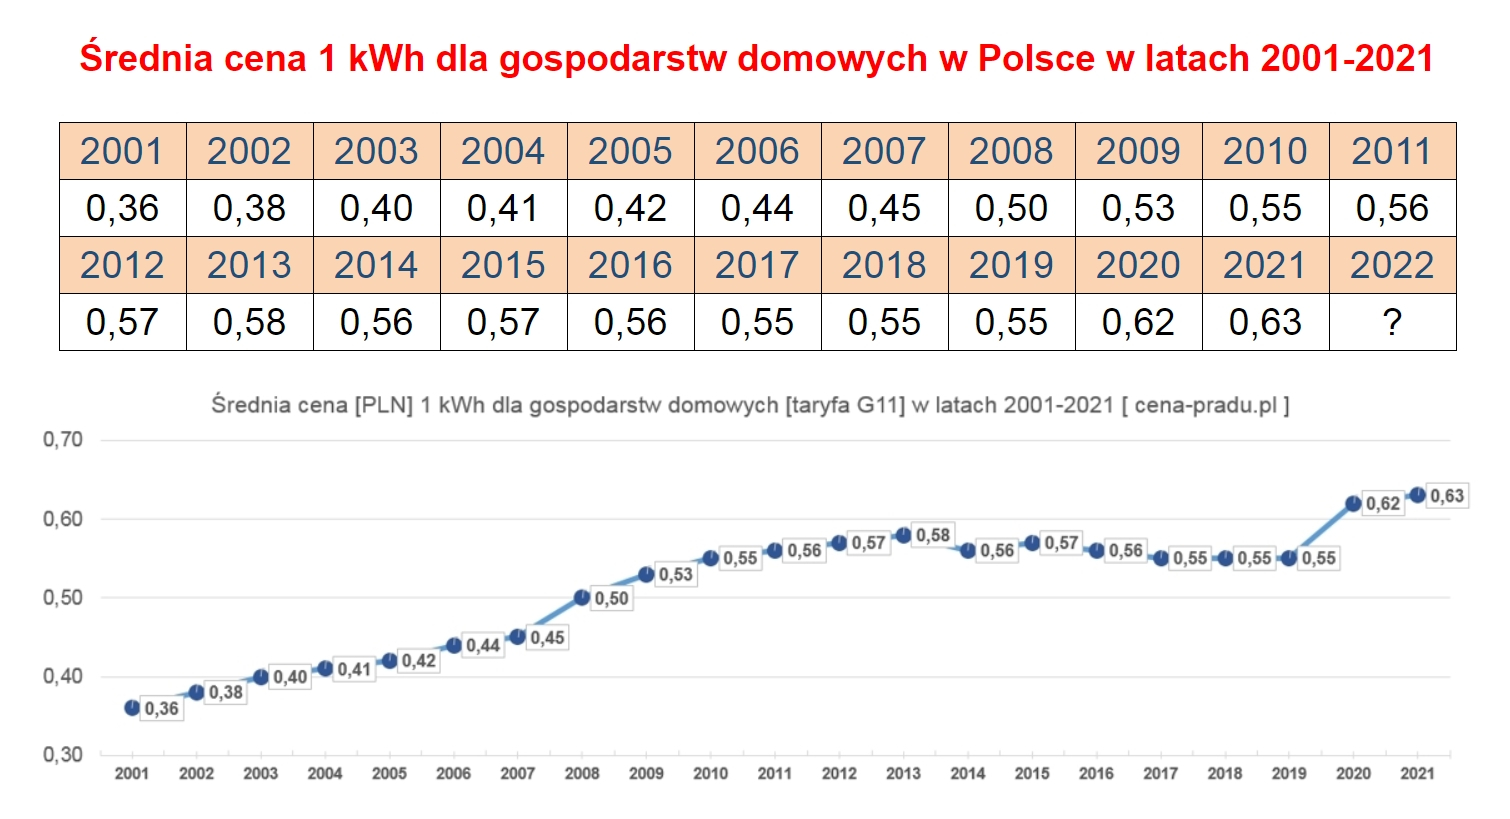 Średnia cena 1 kWh w PL w latach 2001-2021